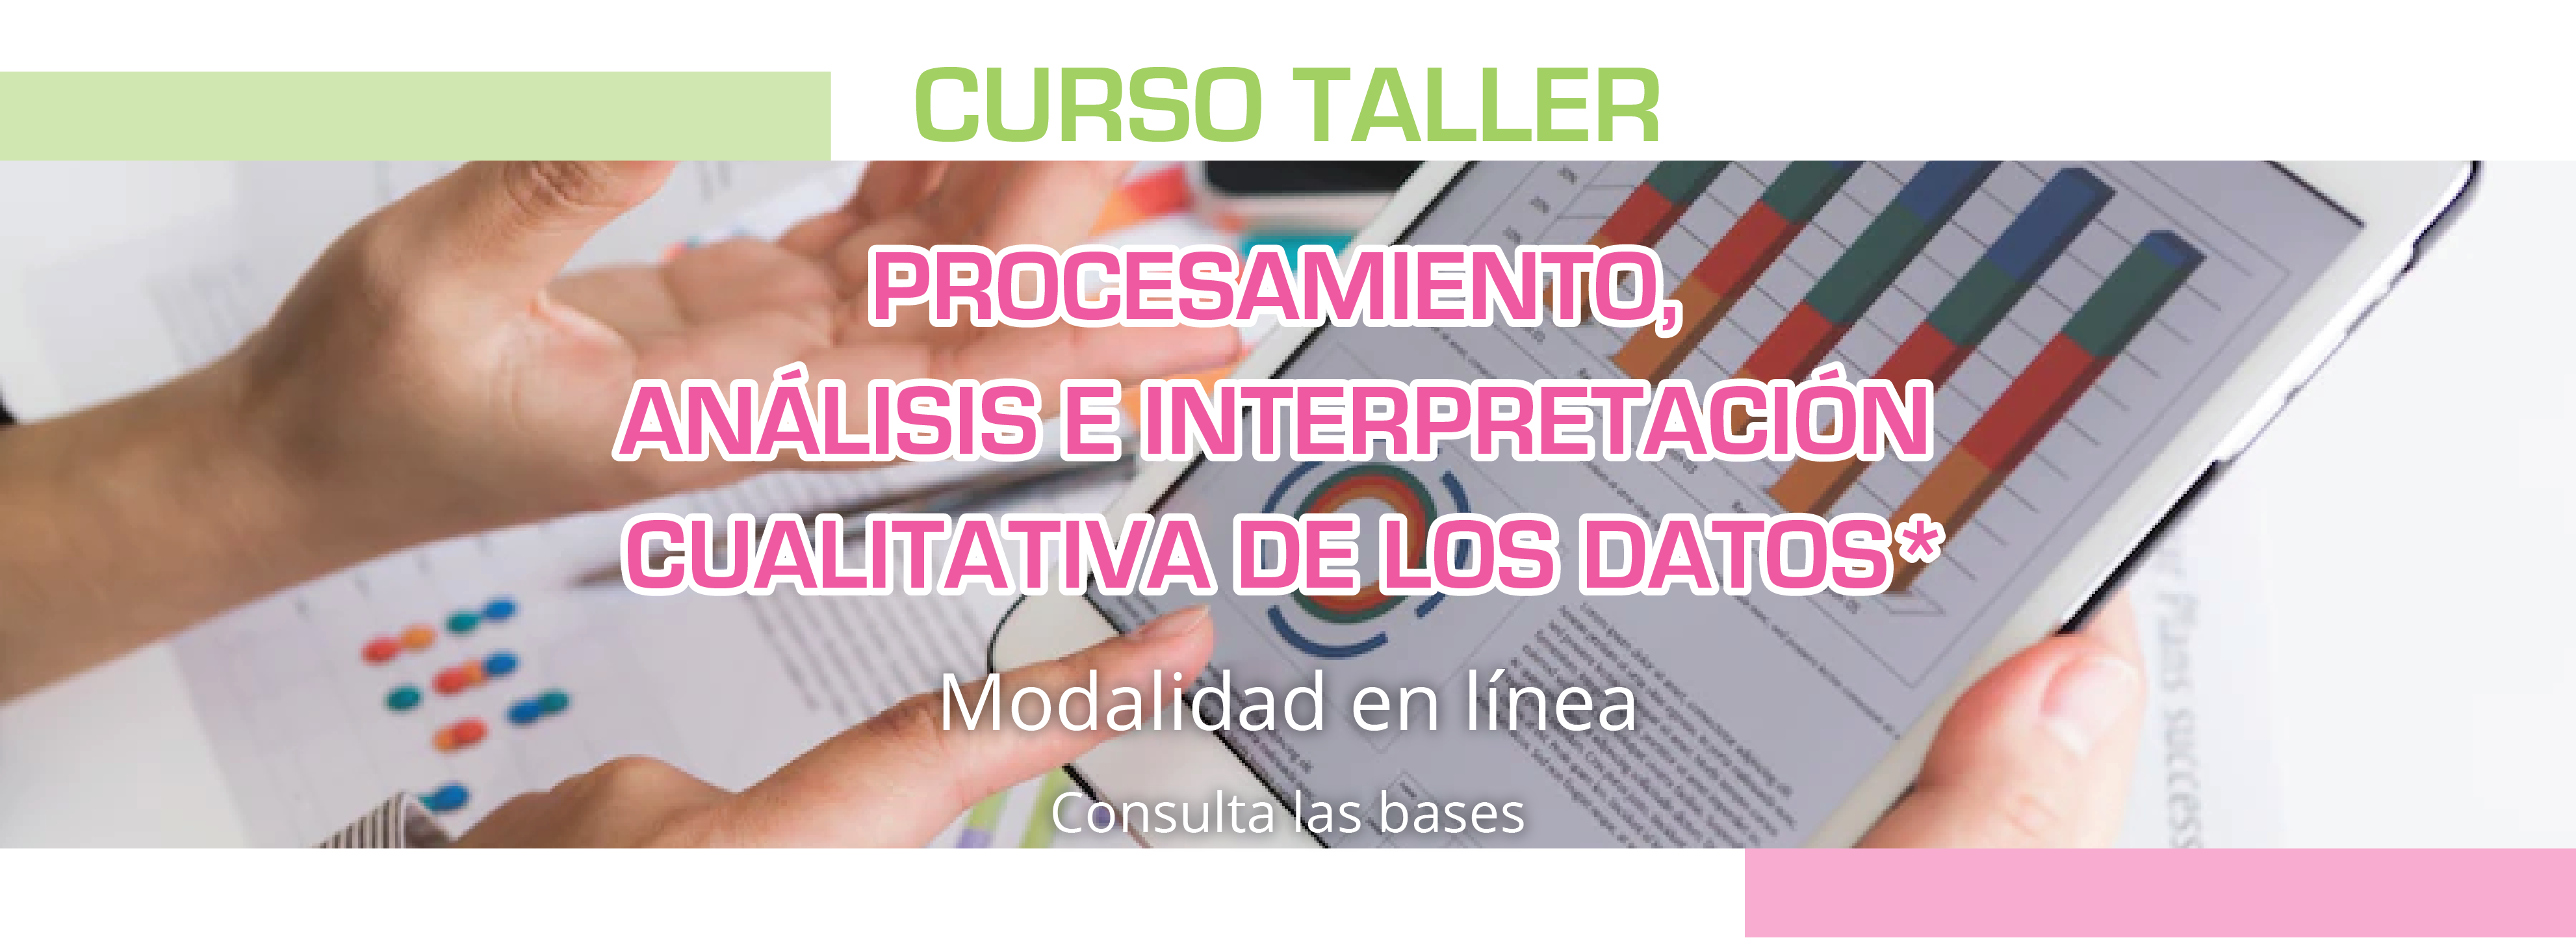 Convocatoria_Curso_Taller_Procesamiento_analisis_e_interpretacion_cualitatitva_de_los_datos_banner_web_1